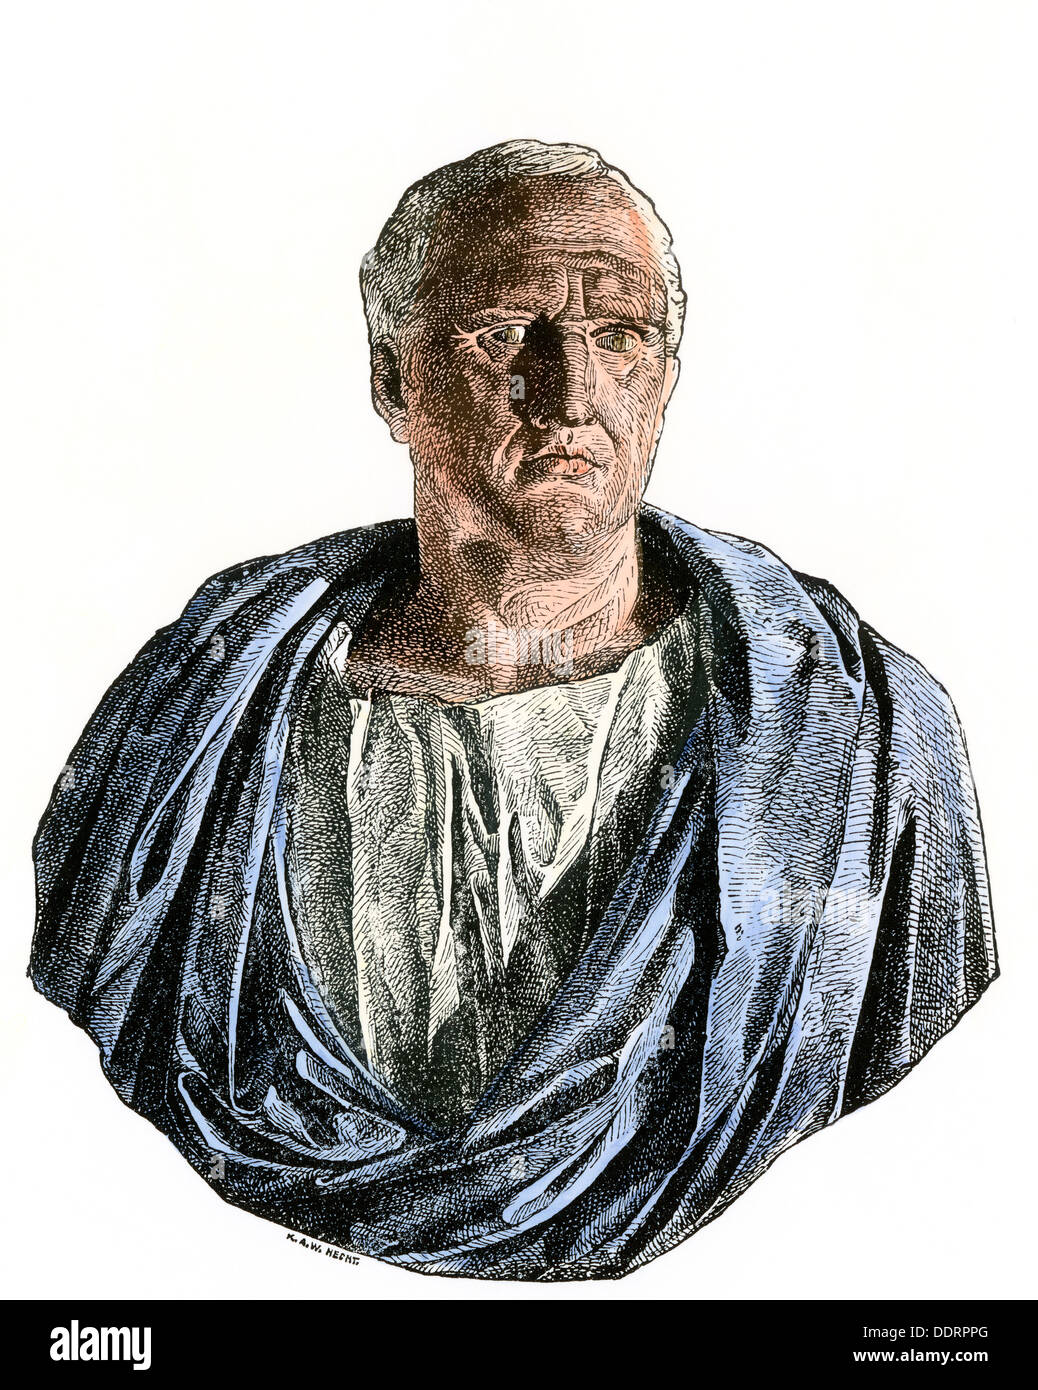 Cicéron, homme d'État et orateur de la Rome antique. À la main, gravure sur bois Banque D'Images